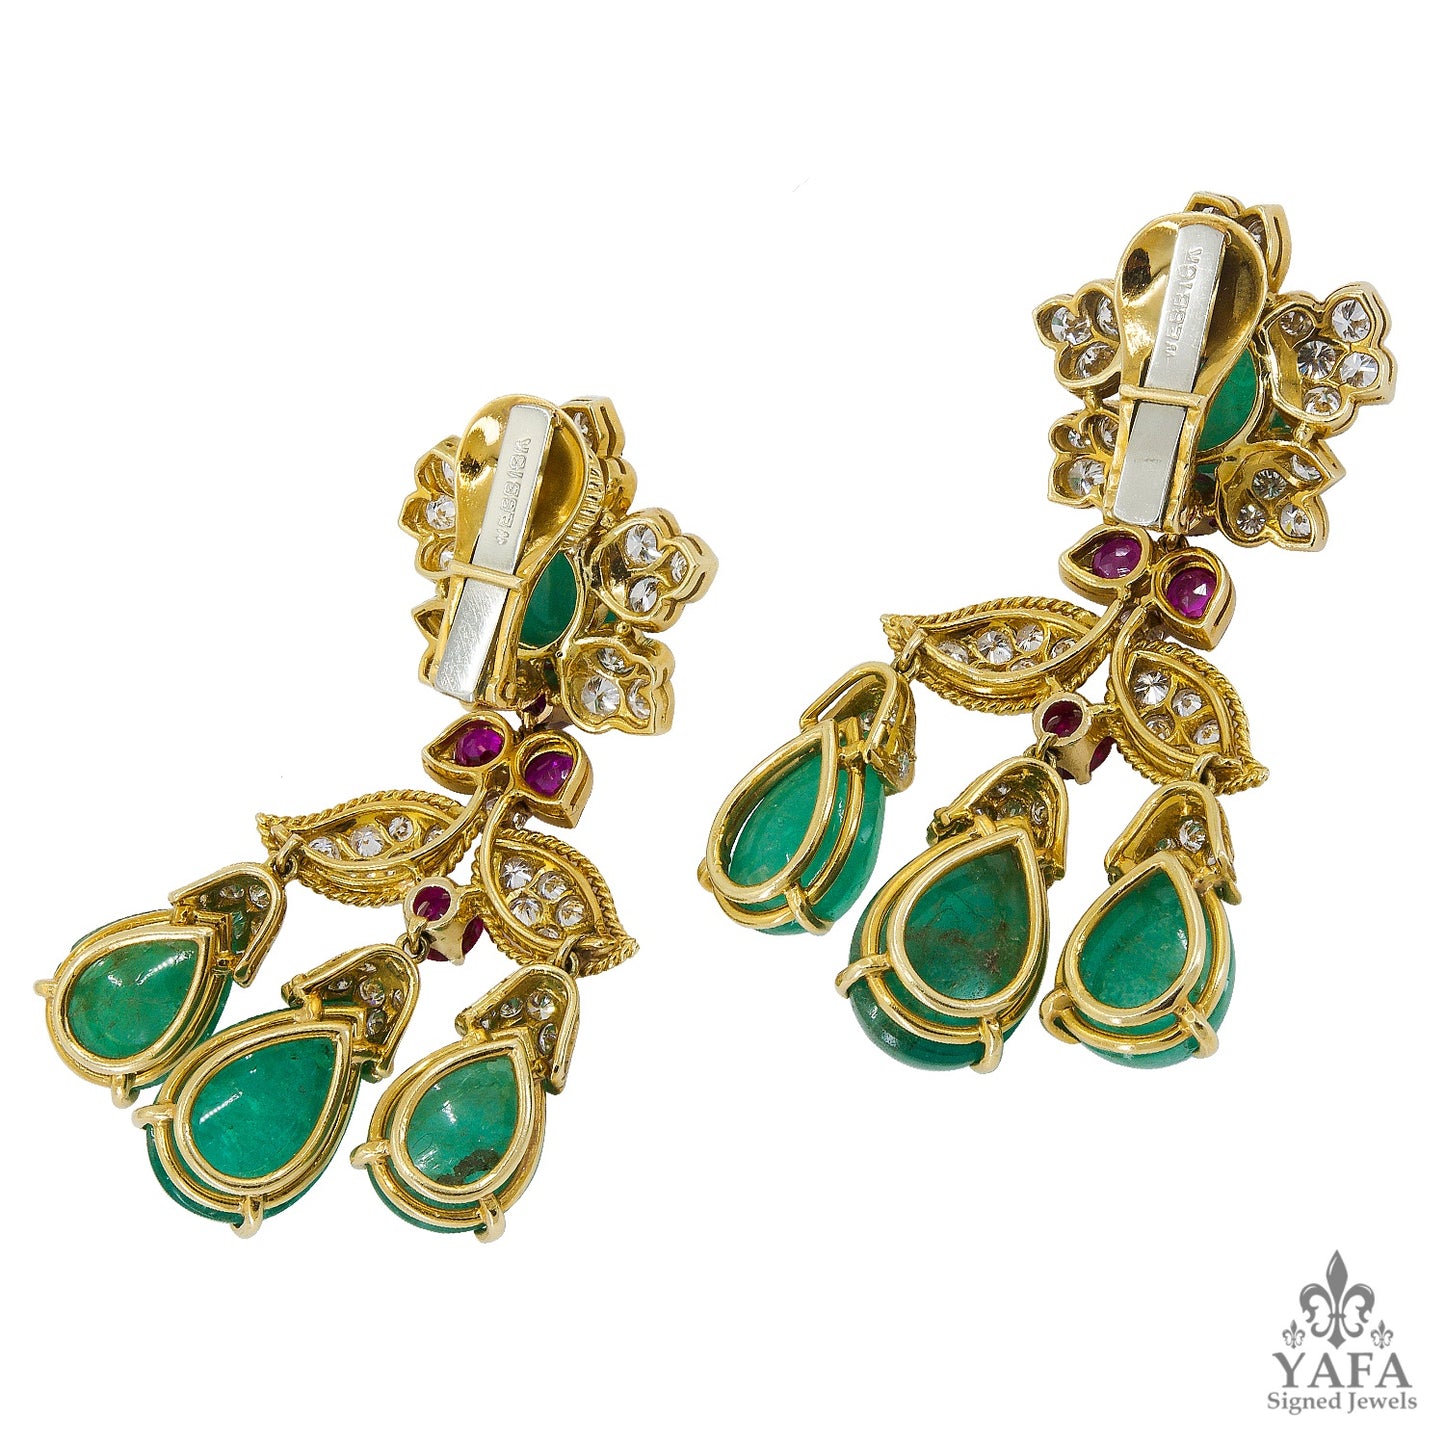 DAVID WEBB Emerald Diamond Ruby Chandelier Earrings